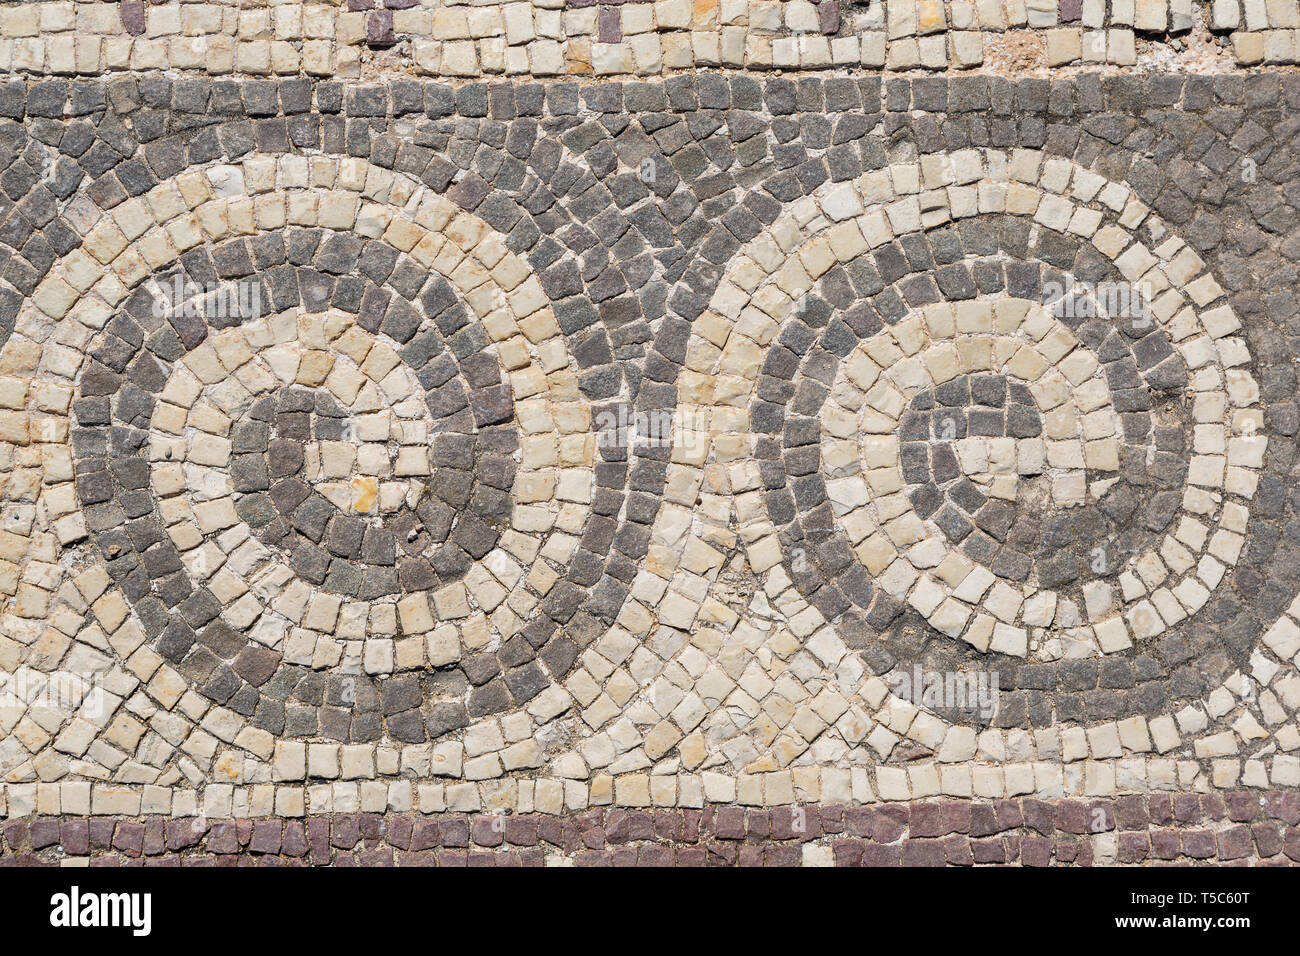 Astract patrones de mosaico en la Casa de Teseo, el Parque Arqueológico de Paphos, Paphos, Chipre Foto de stock